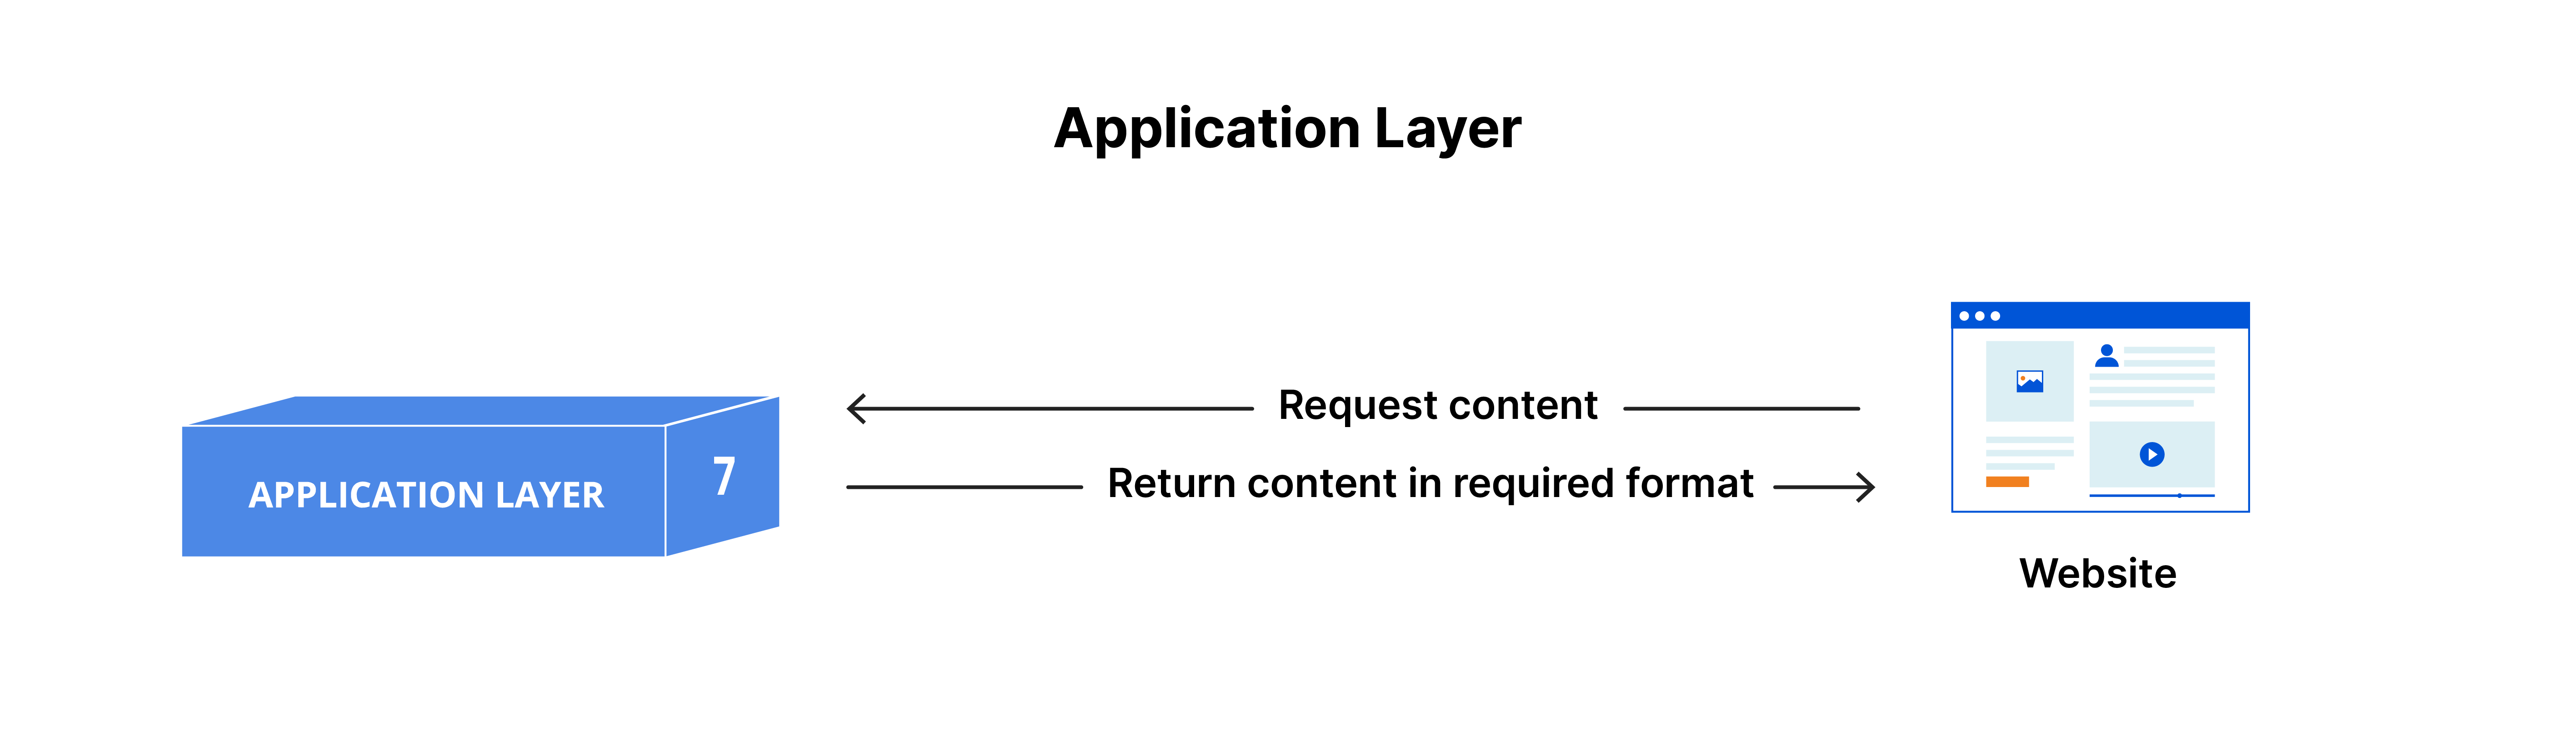 애플리케이션 계층: 요청을 받아 필요한 형식으로 반환되는 콘텐츠